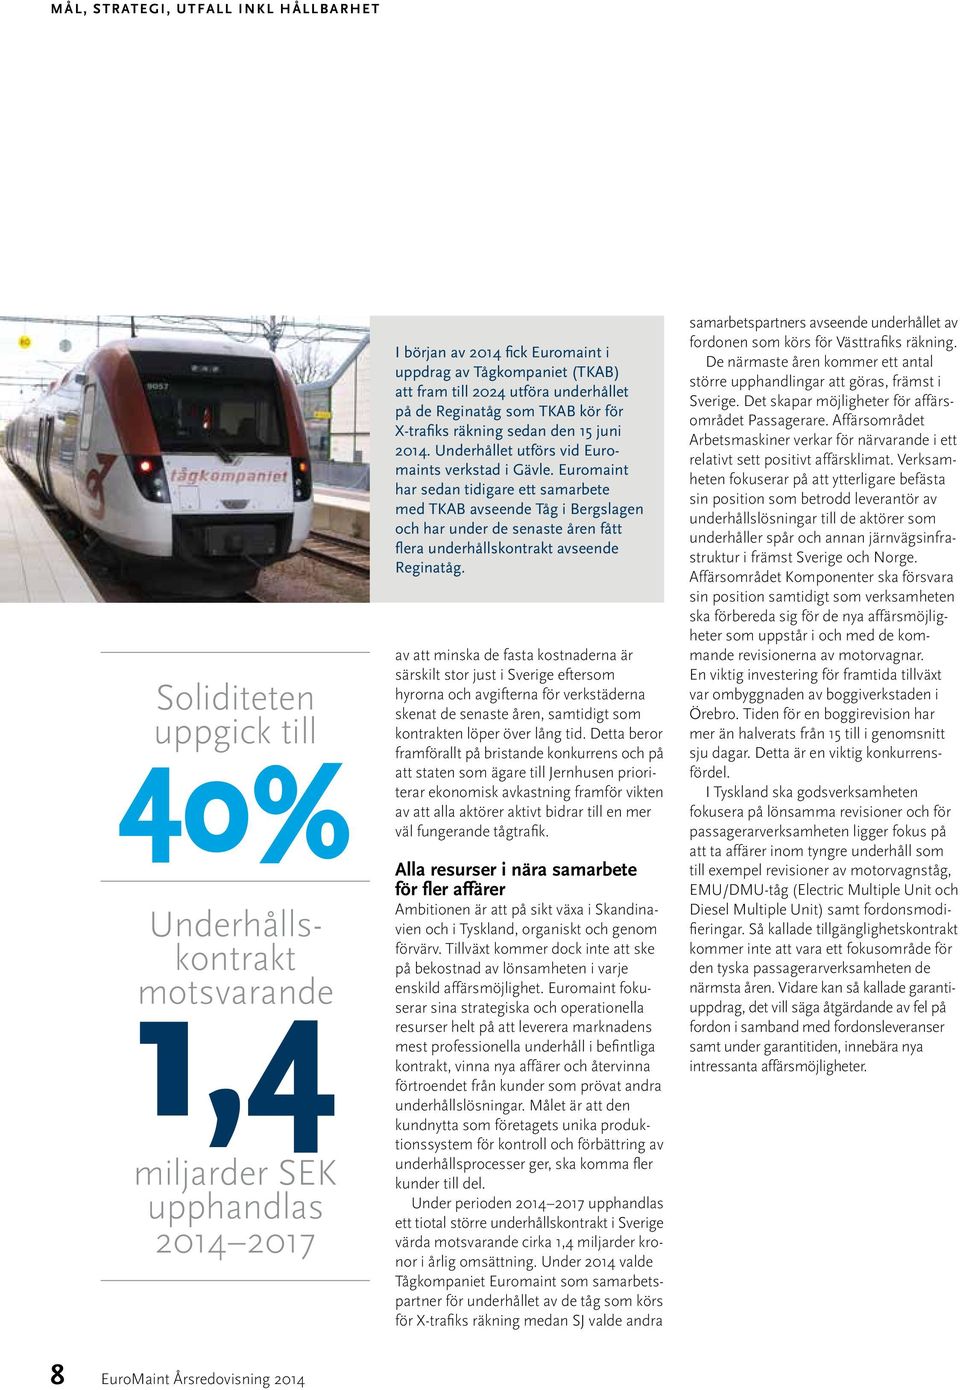 Euromaint har sedan tidigare ett samarbete med TKAB avseende Tåg i Bergslagen och har under de senaste åren fått flera underhålls kontrakt avseende Reginatåg.